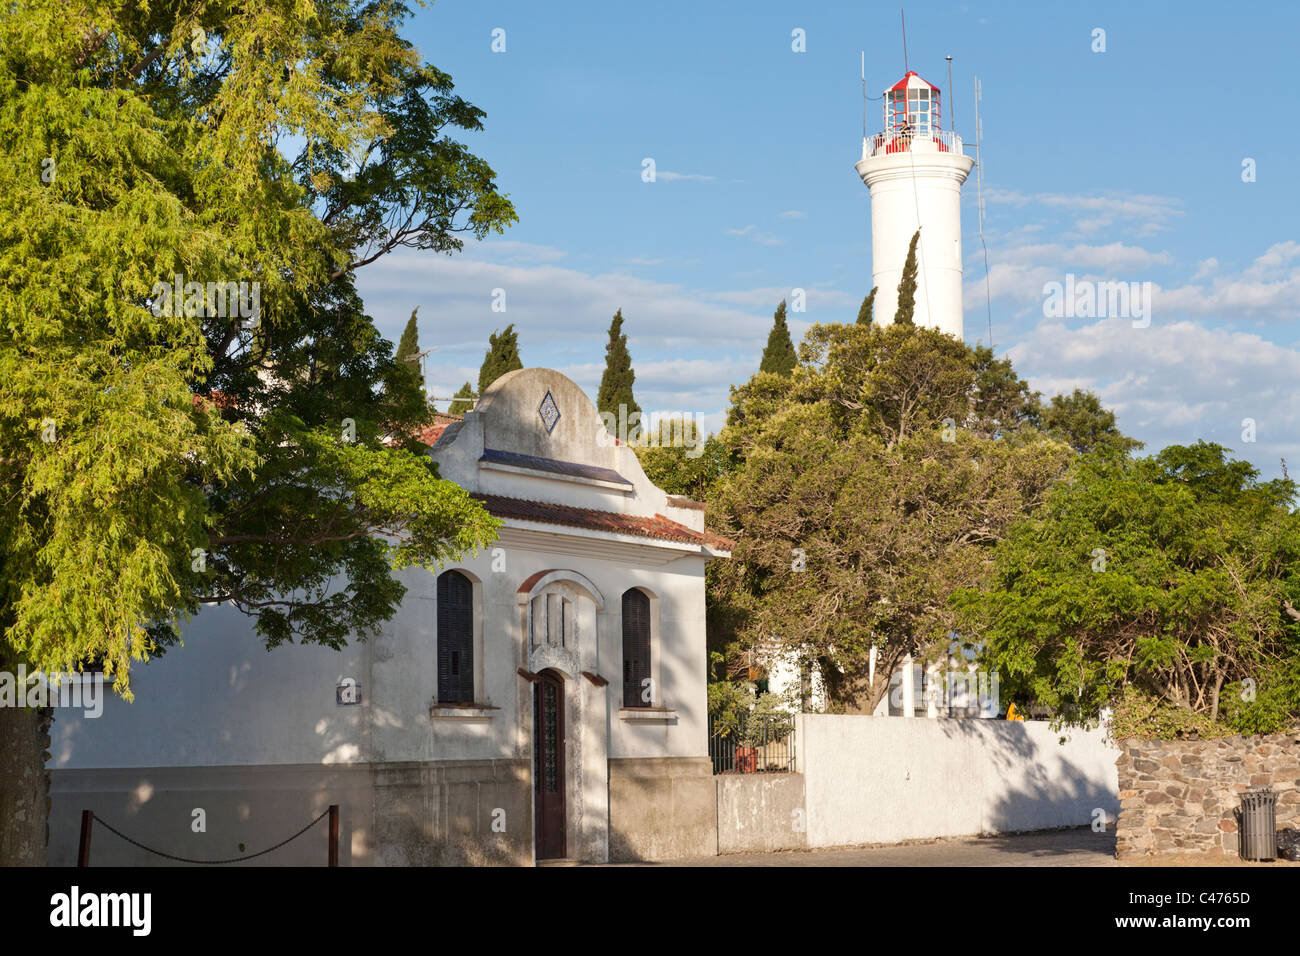 Lighthouse, Barrio Historico, Colonia del Sacramento, Uruguay Stock Photo